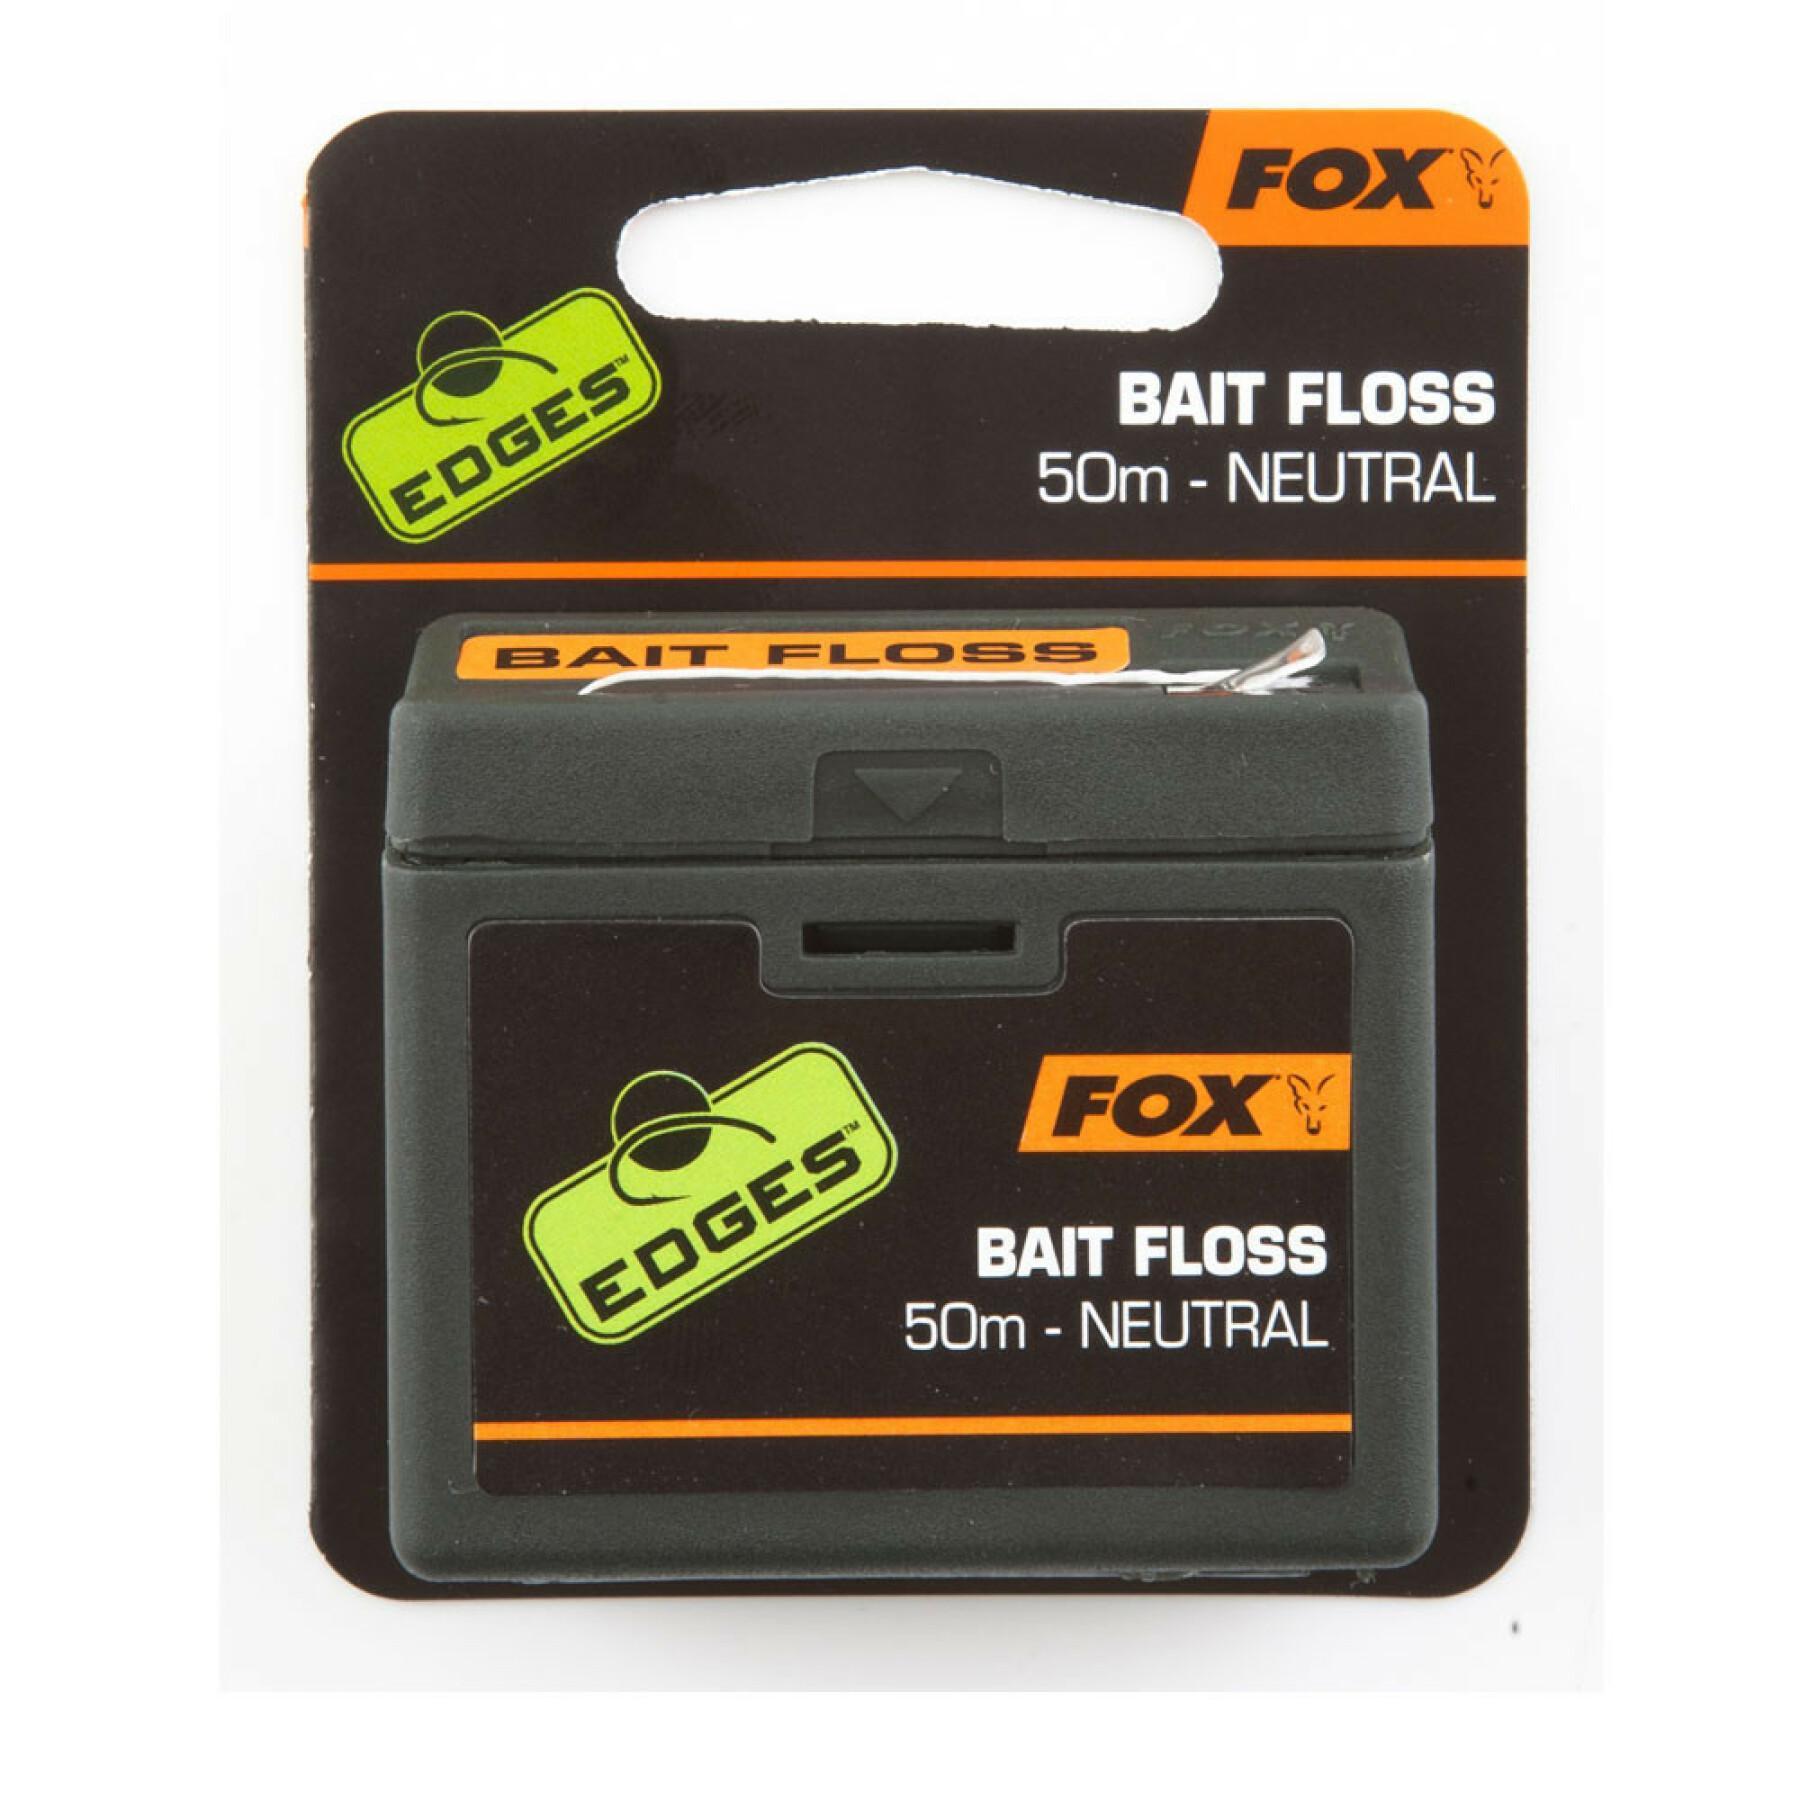 Fox Edges Bait Floss 50m Neutral Carp fishing tackle 